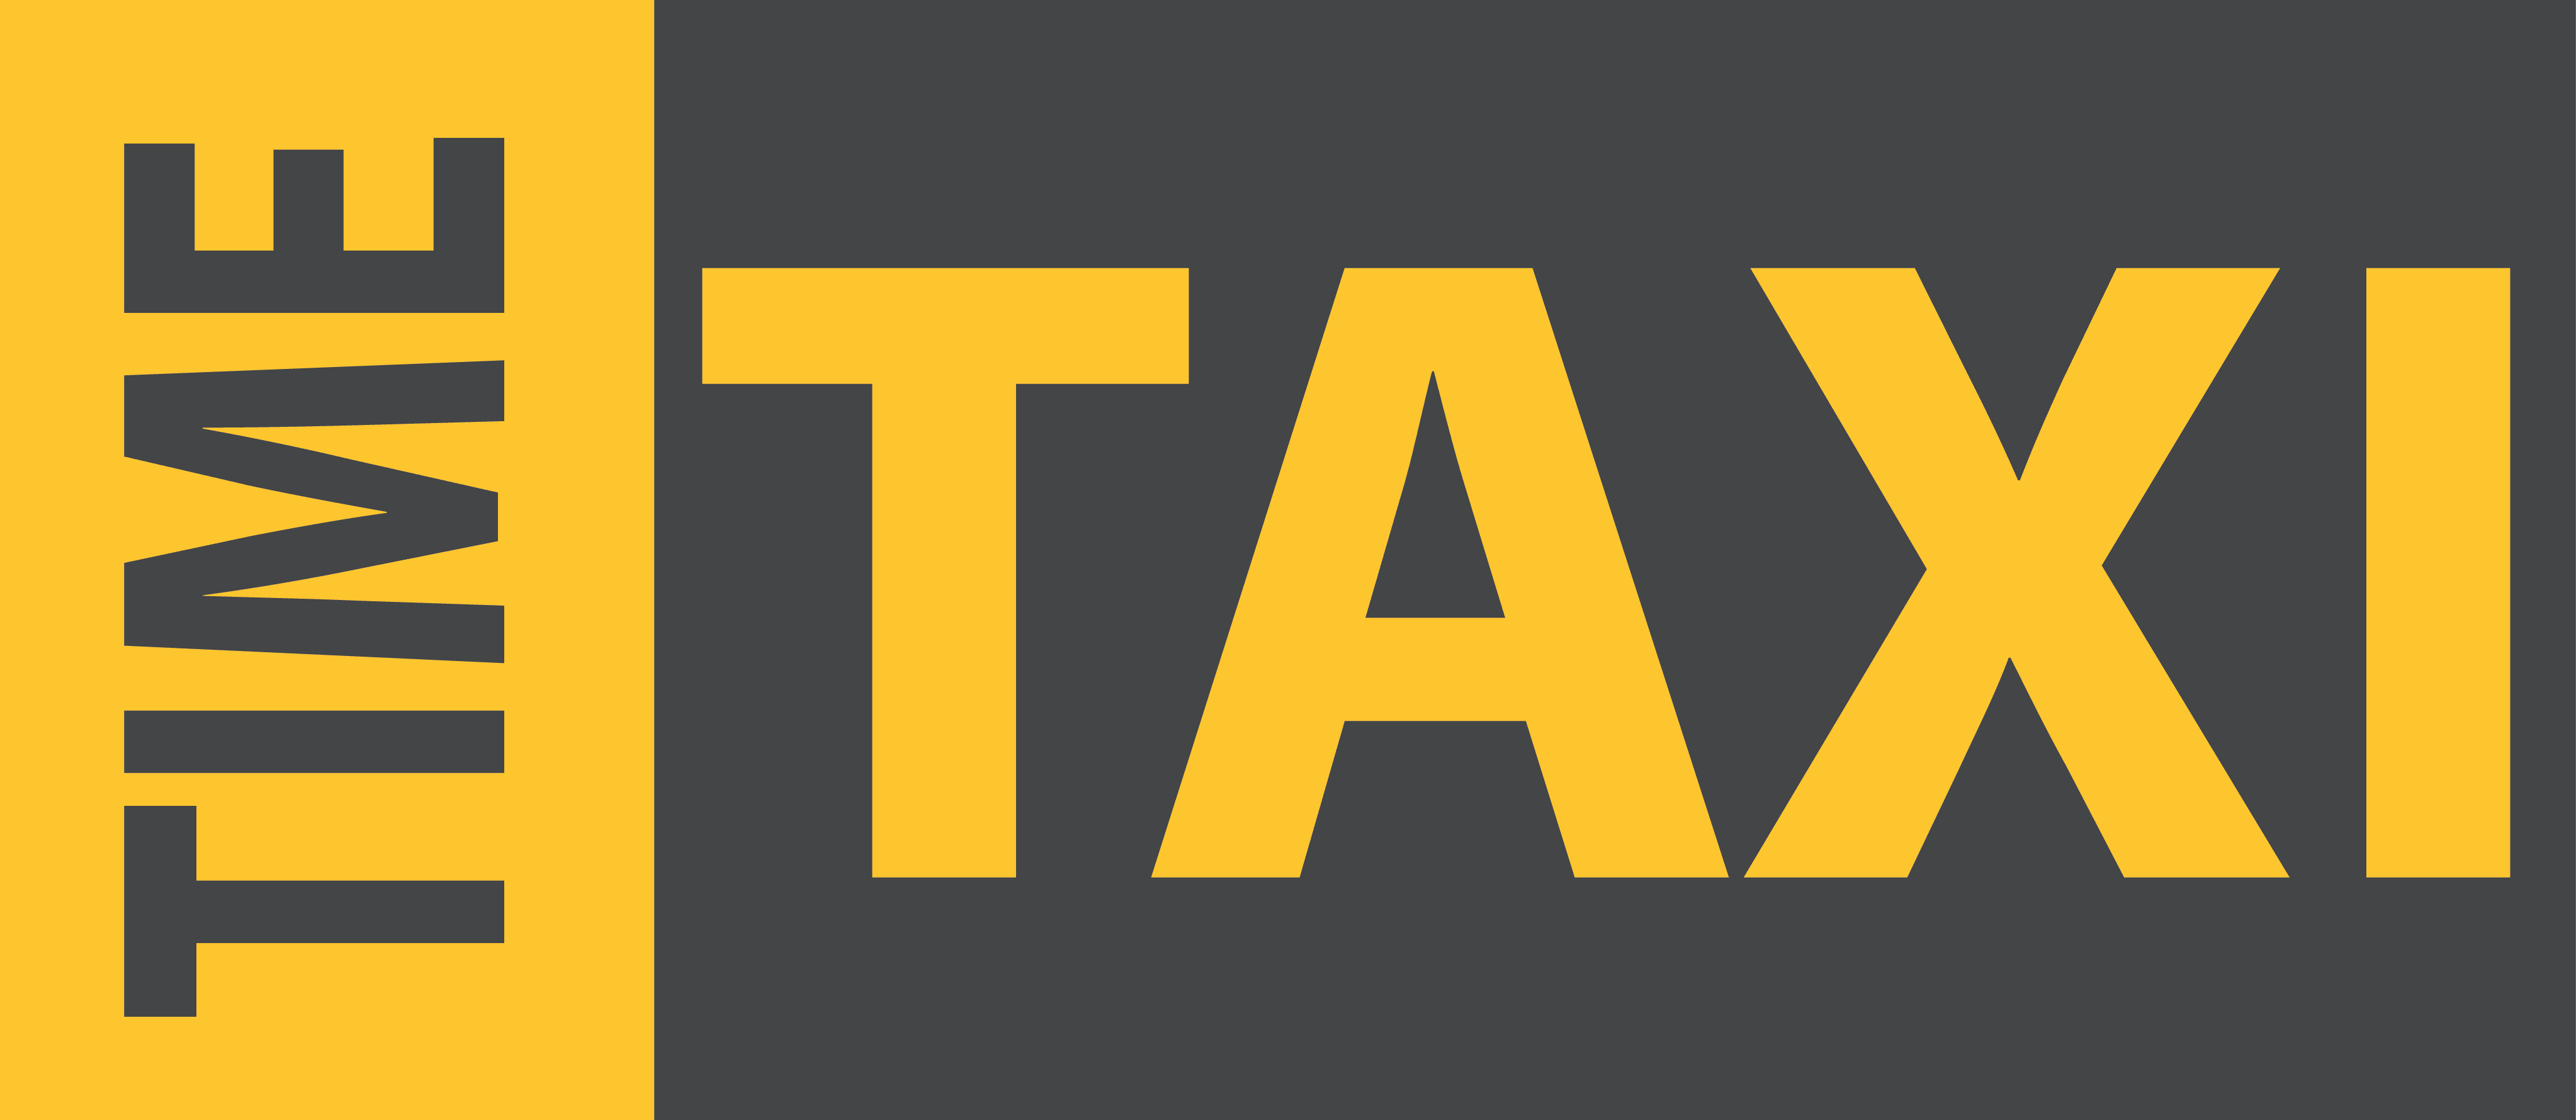 tampataxi.cab